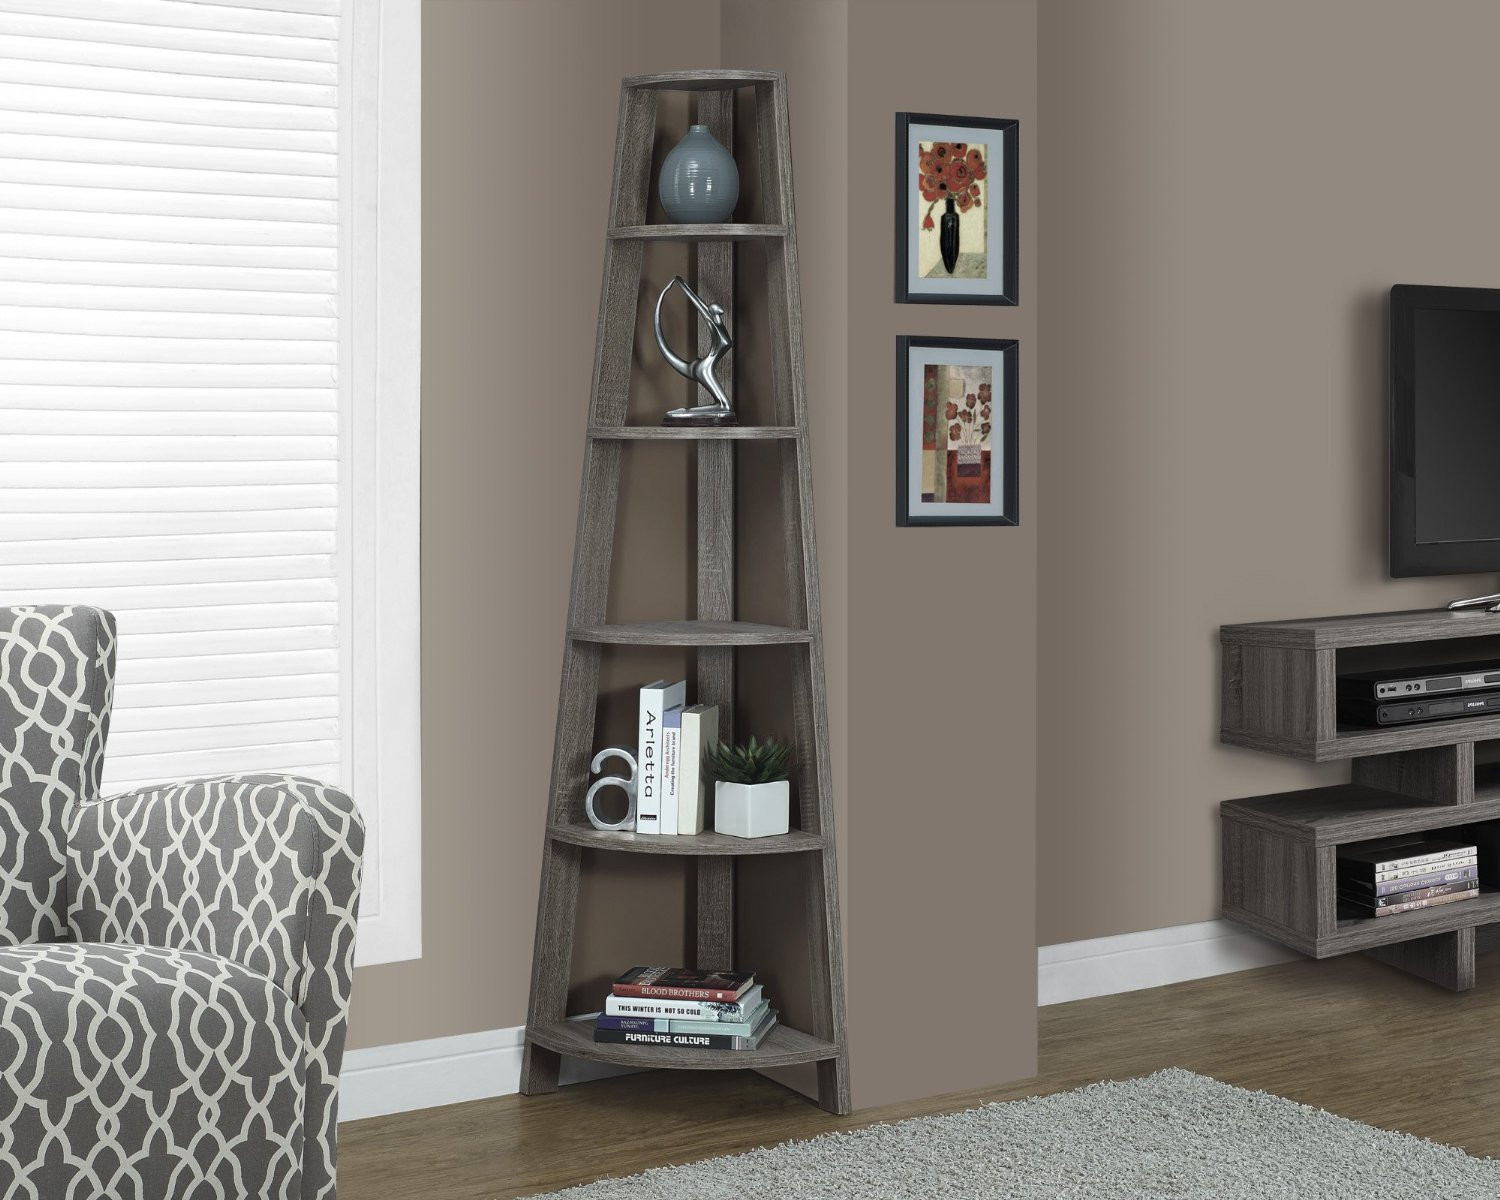 Living Room Shelves Ideas
 Top 10 Corner Shelves for Living Room